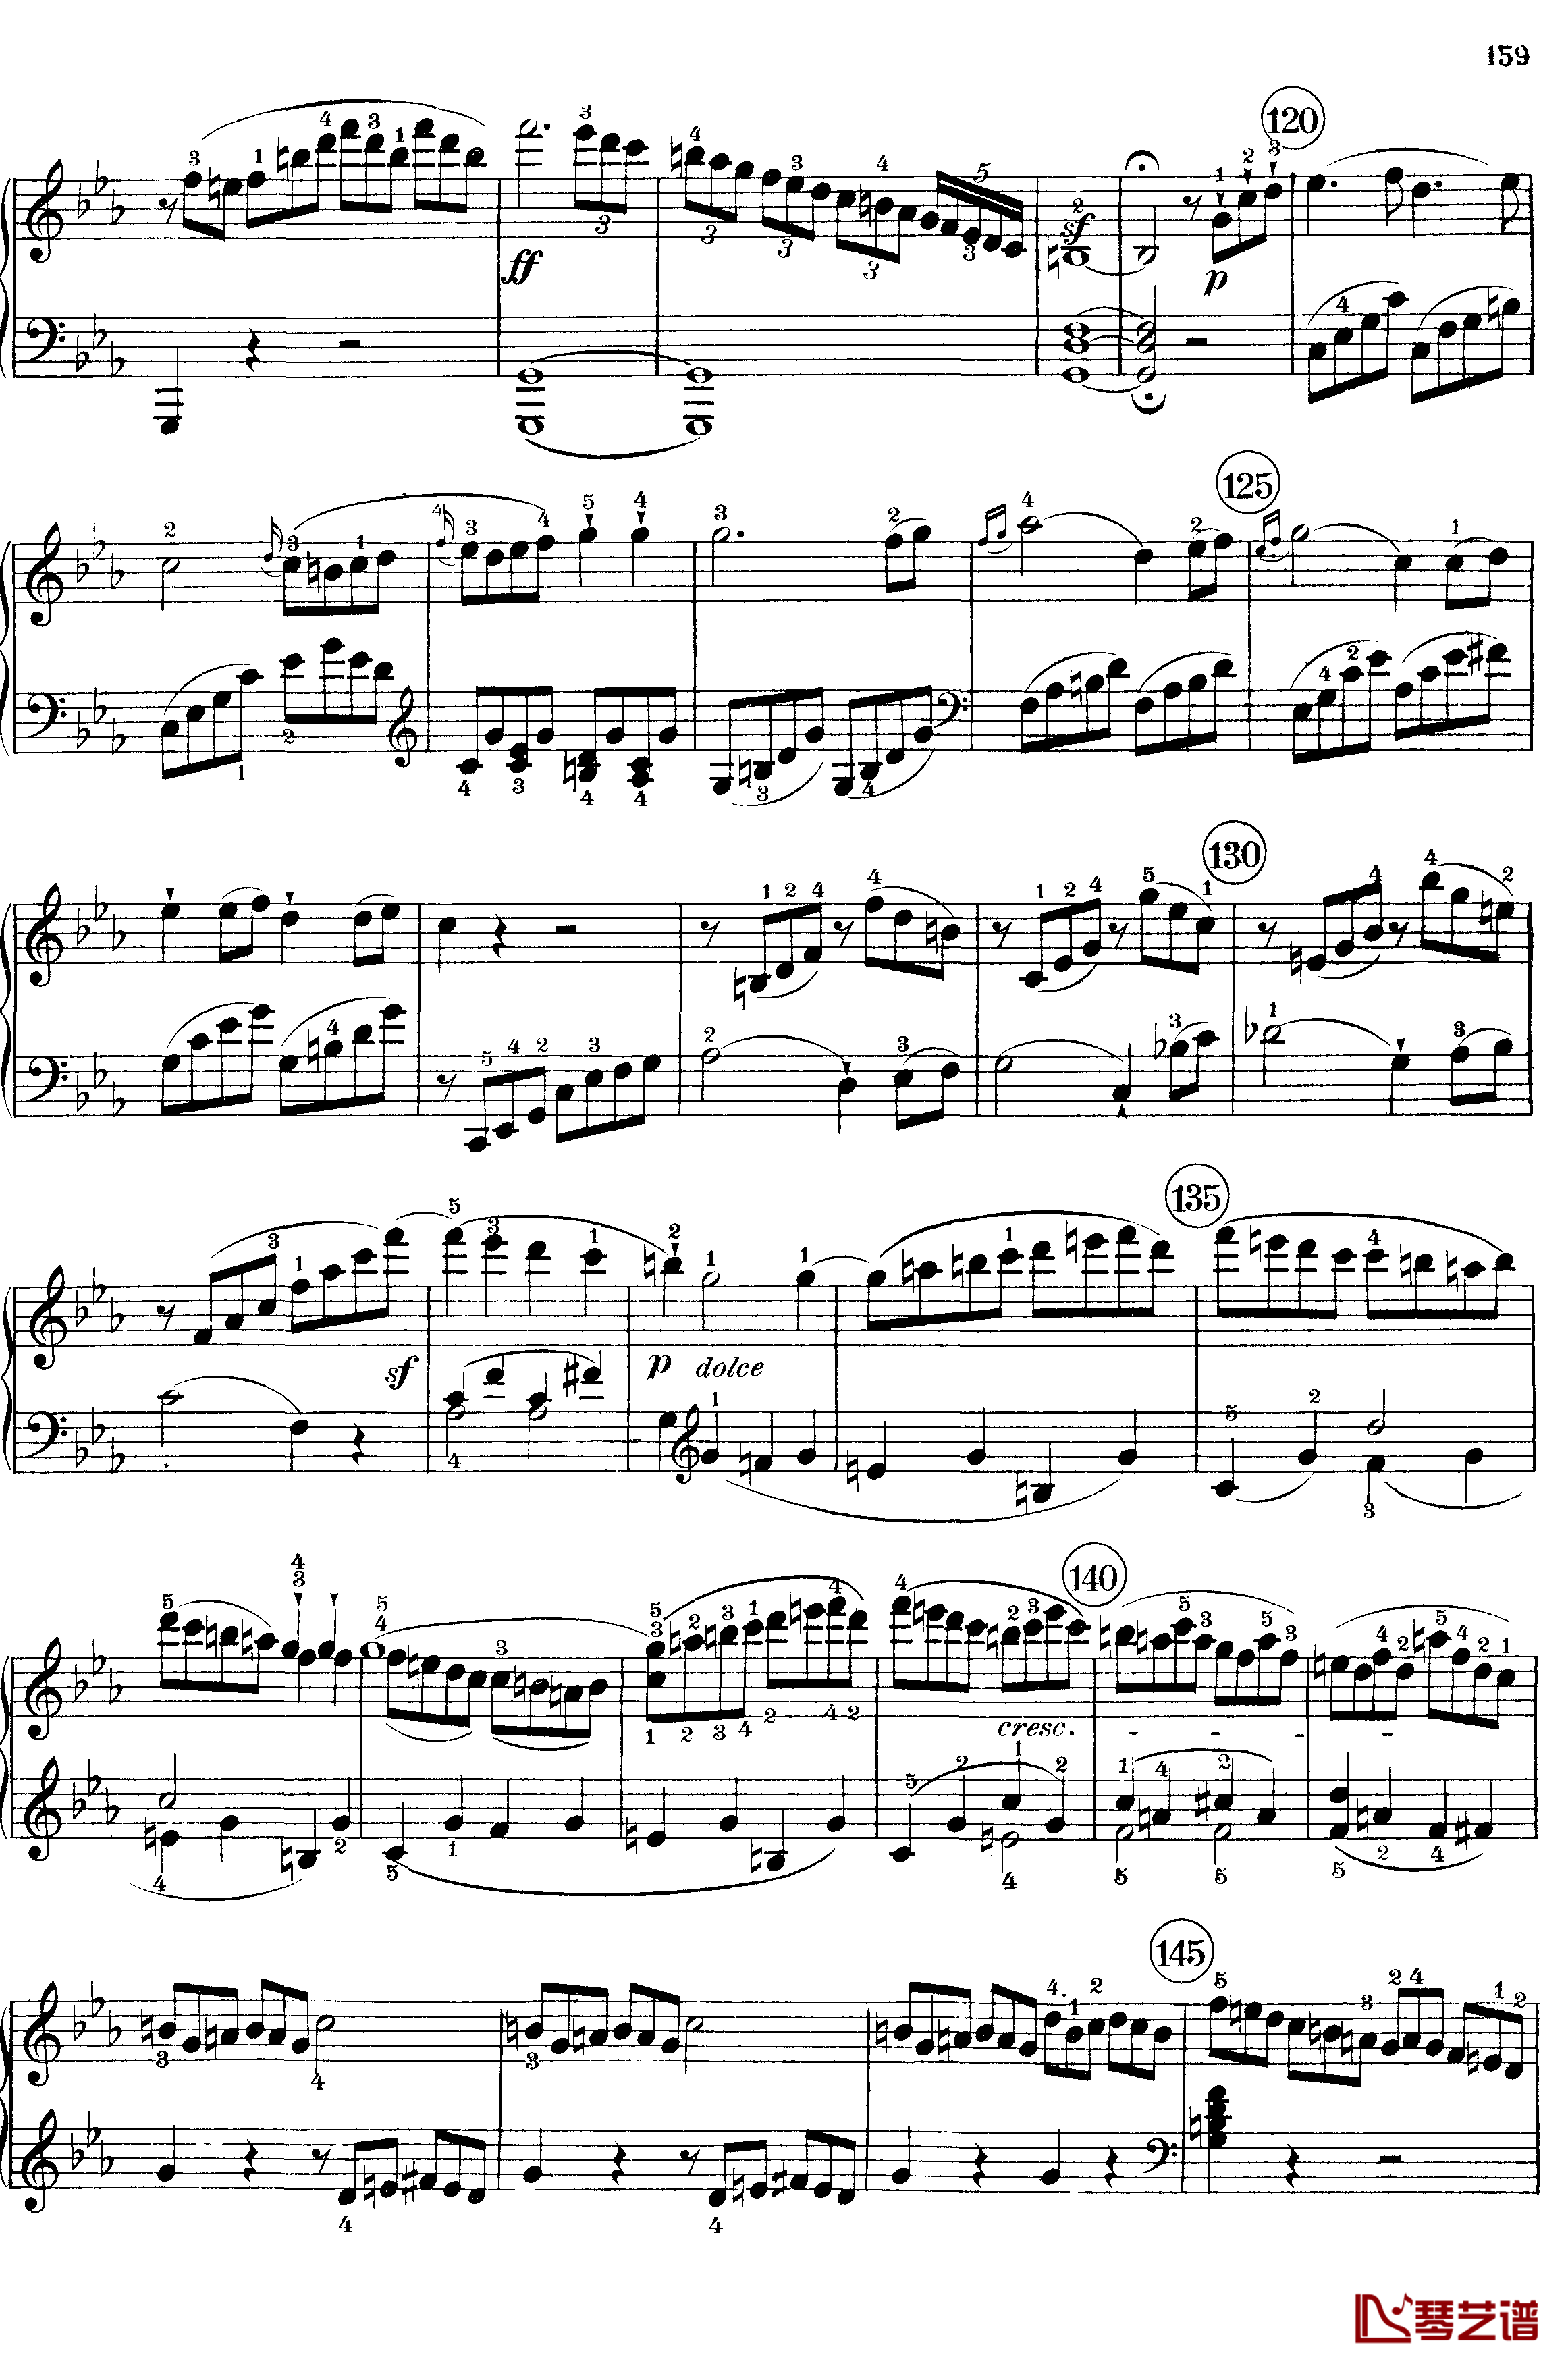 悲怆钢琴谱-c小调第八号钢琴奏鸣曲-全乐章-带指法版-贝多芬-beethoven17